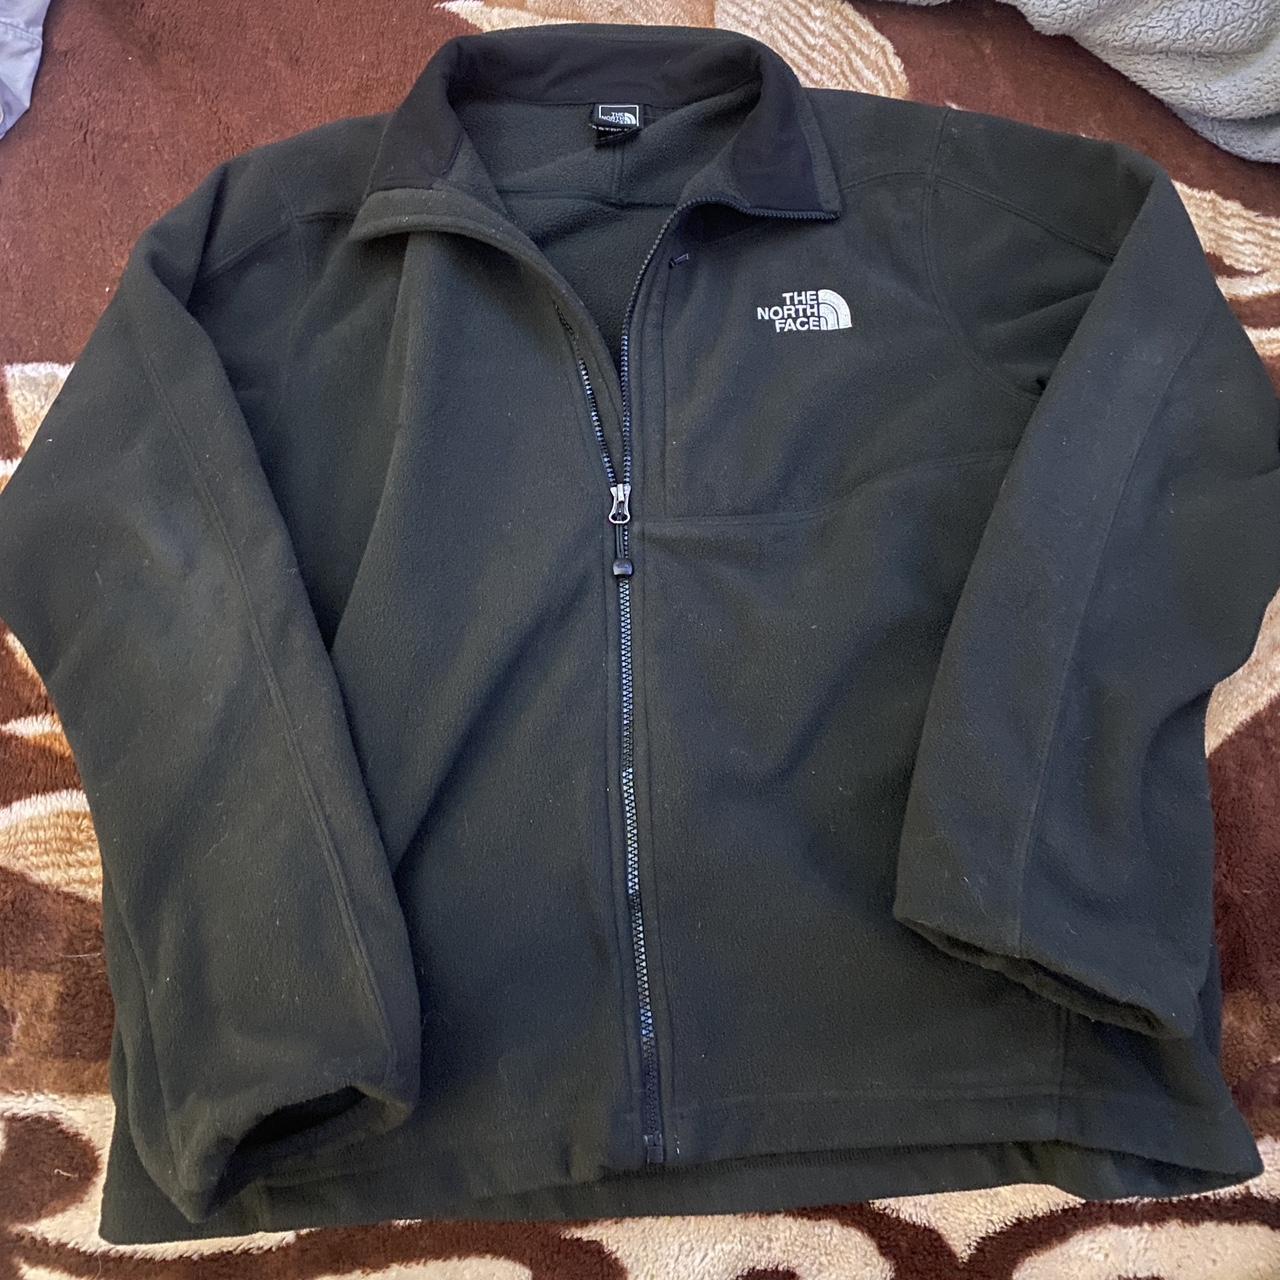 vintage North Face fleece jacket good condition... - Depop